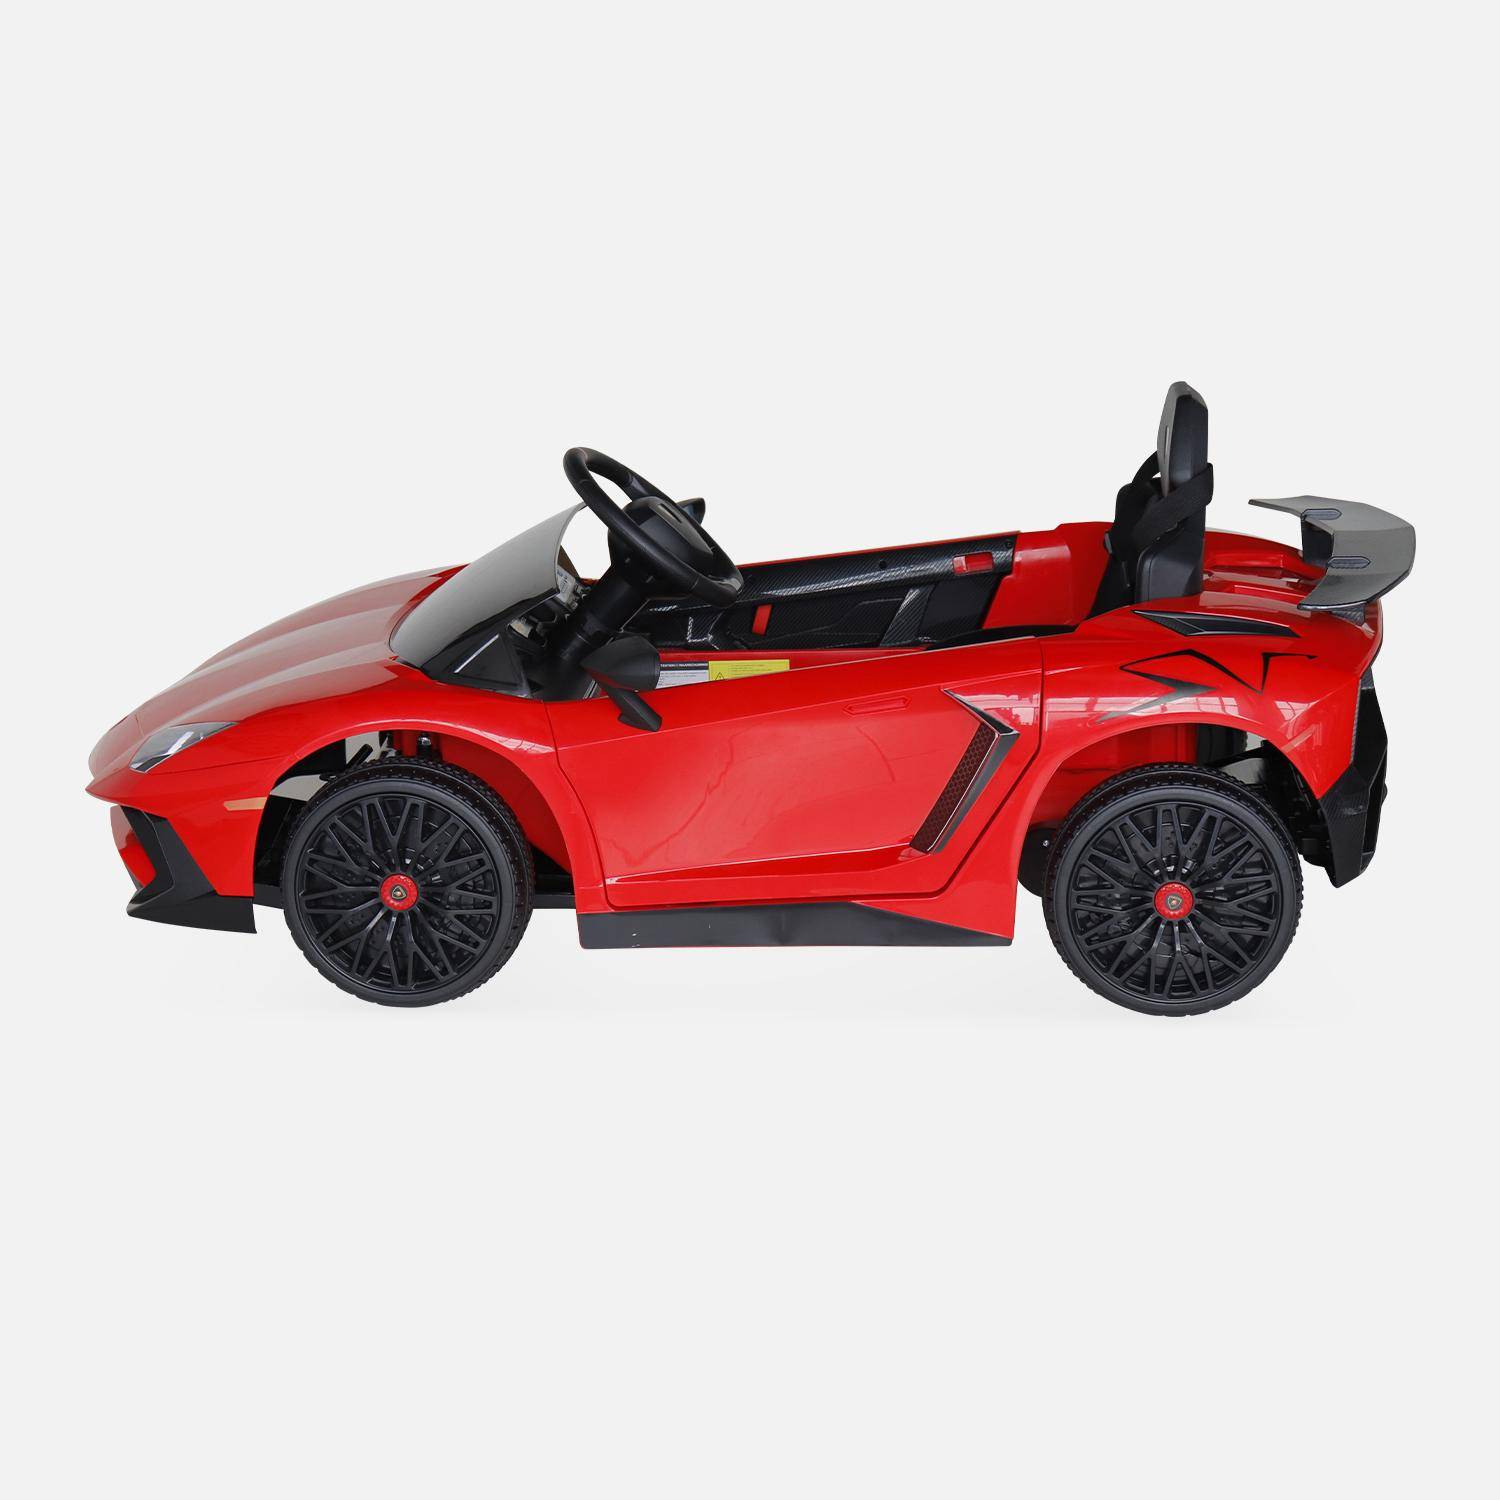 12V Lamborghini elektrische kinderauto, rood, 1 zitplaats, met autoradio, afstandsbediening, MP3, USB-poort en functionele koplampen Photo4